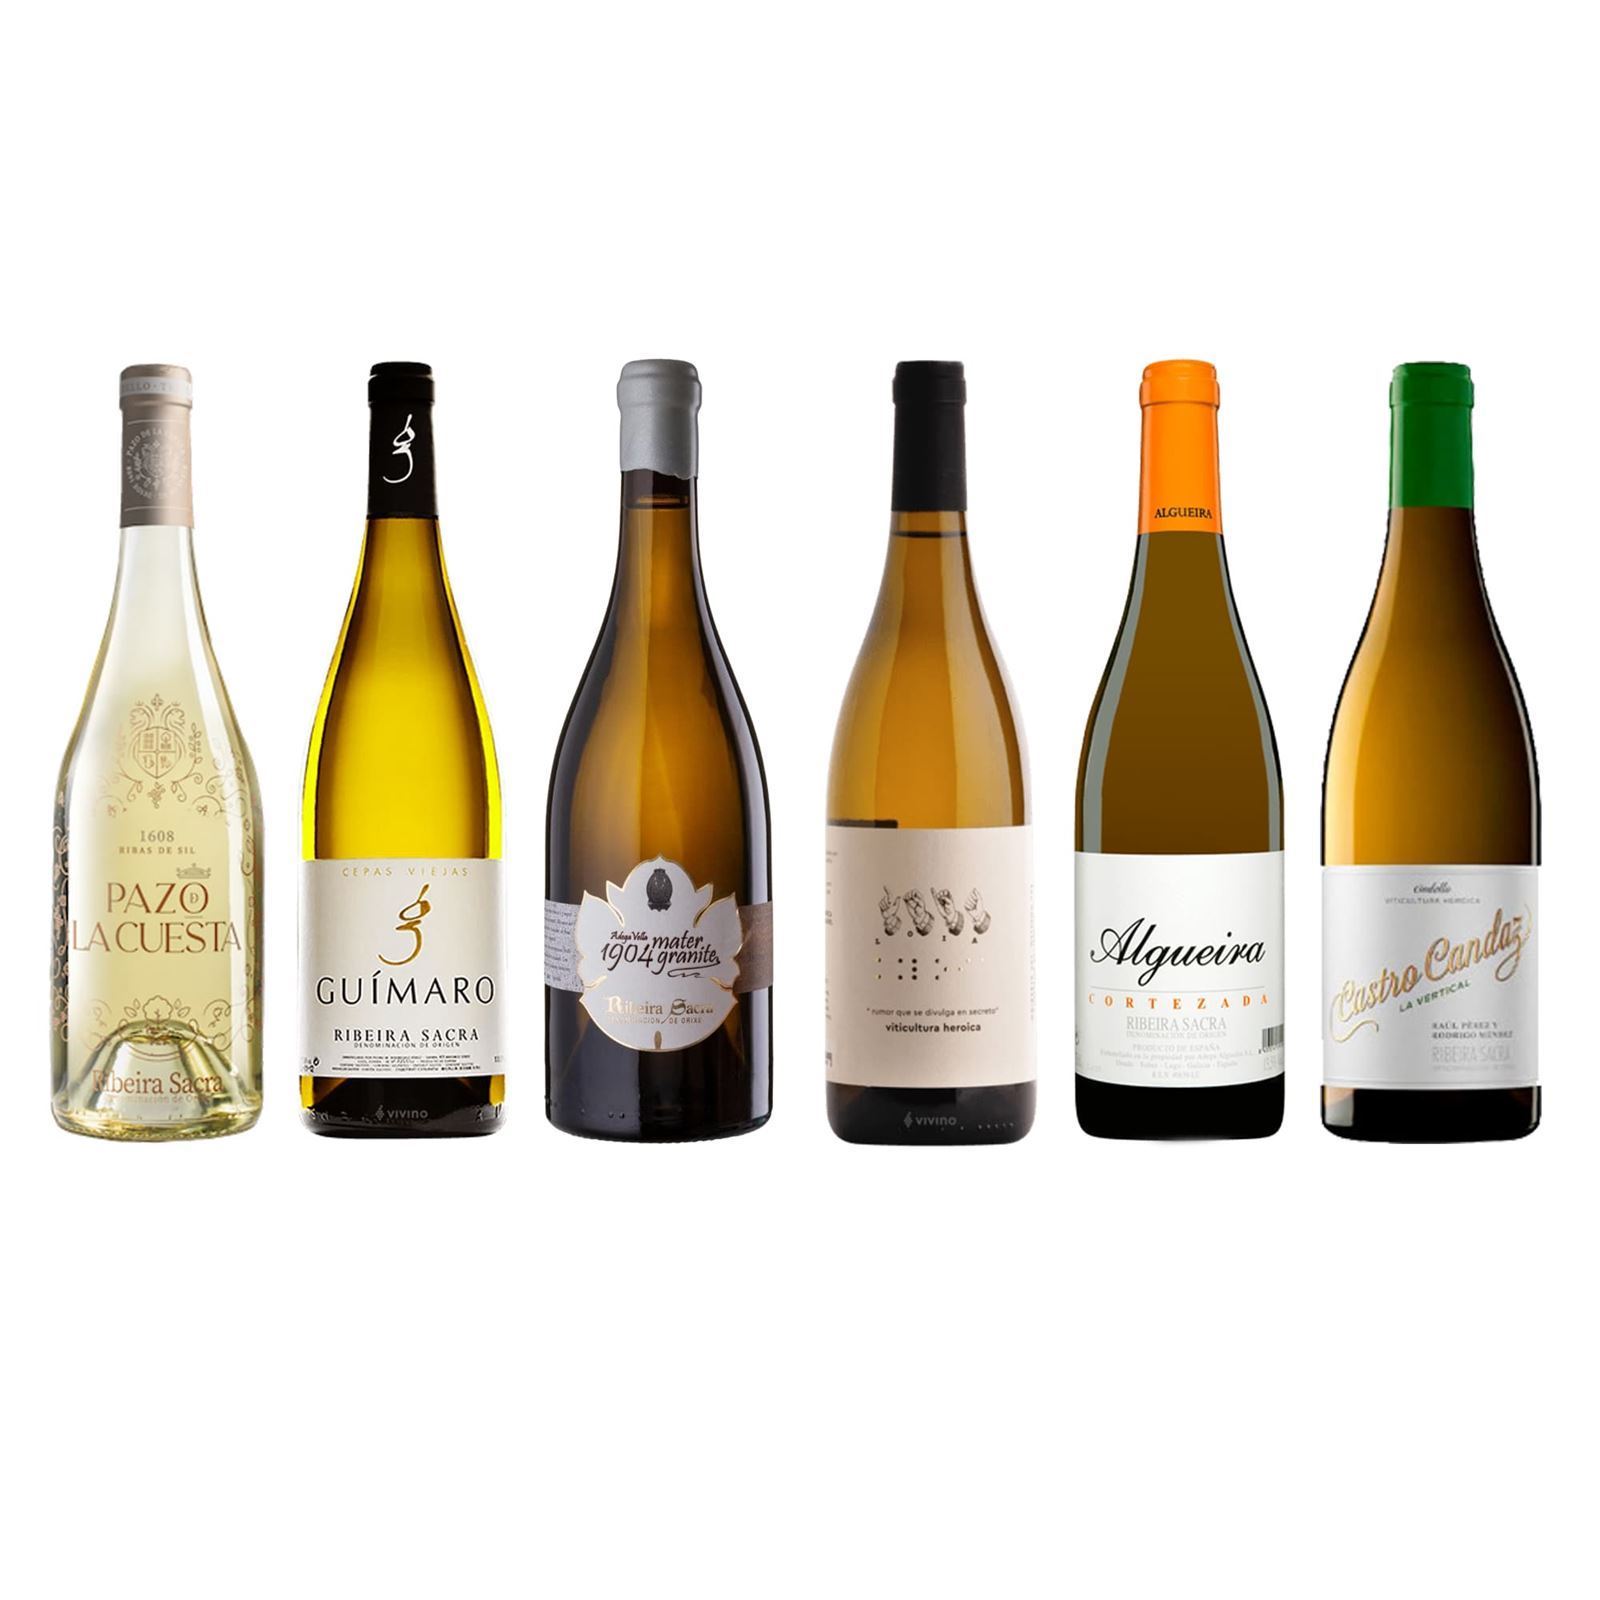 Lote de vinos blancos “Ribeira Sacra” - Imagen 1